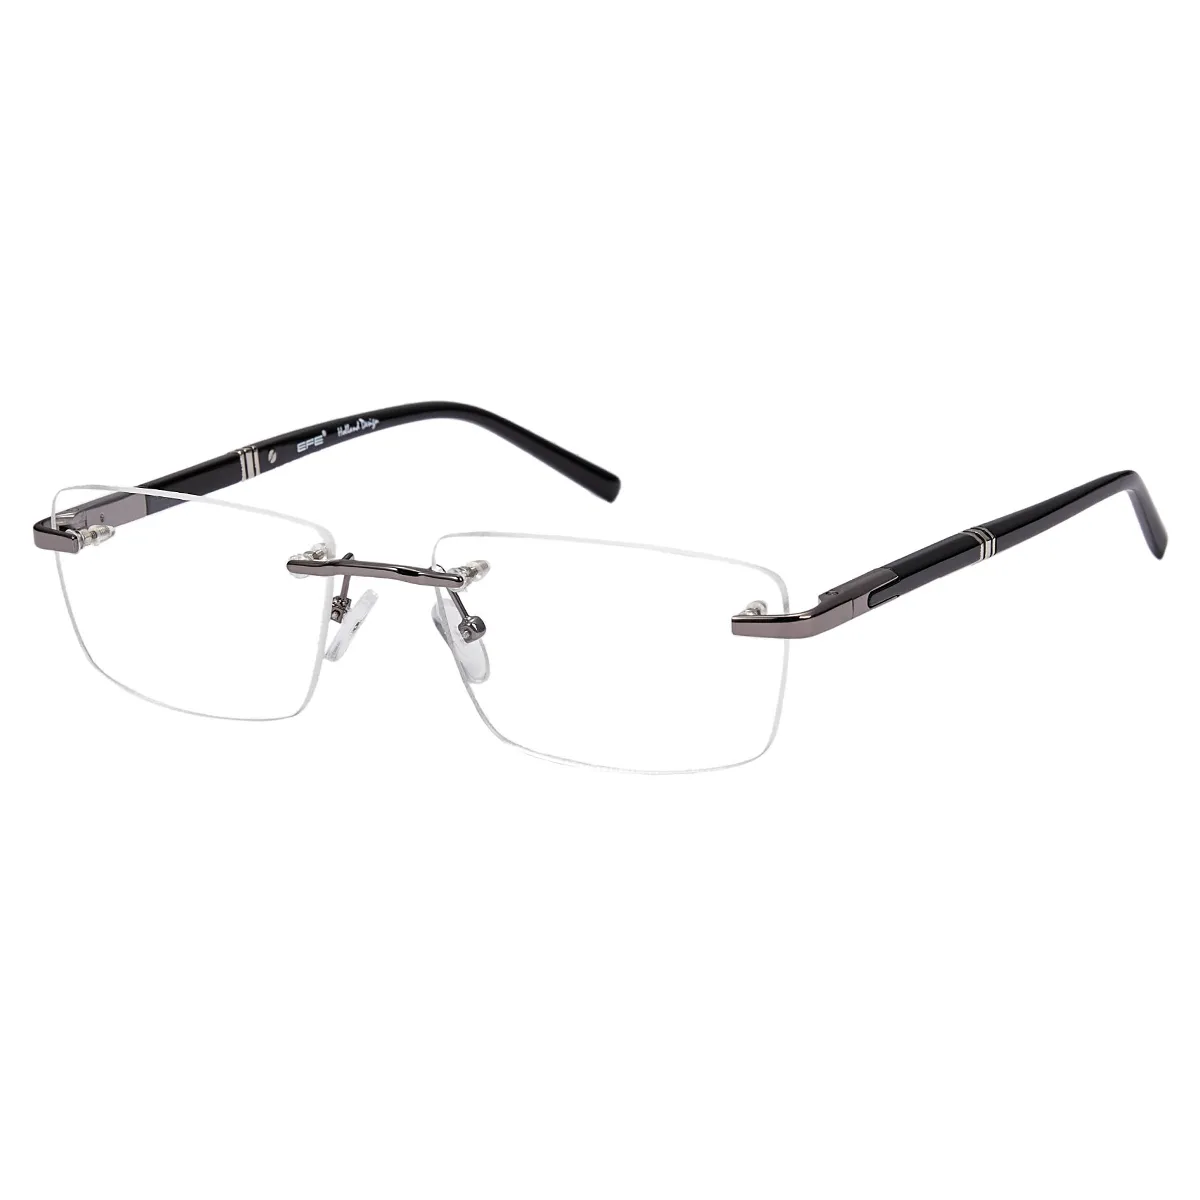 John - Rectangle Gray-Black Glasses for Men